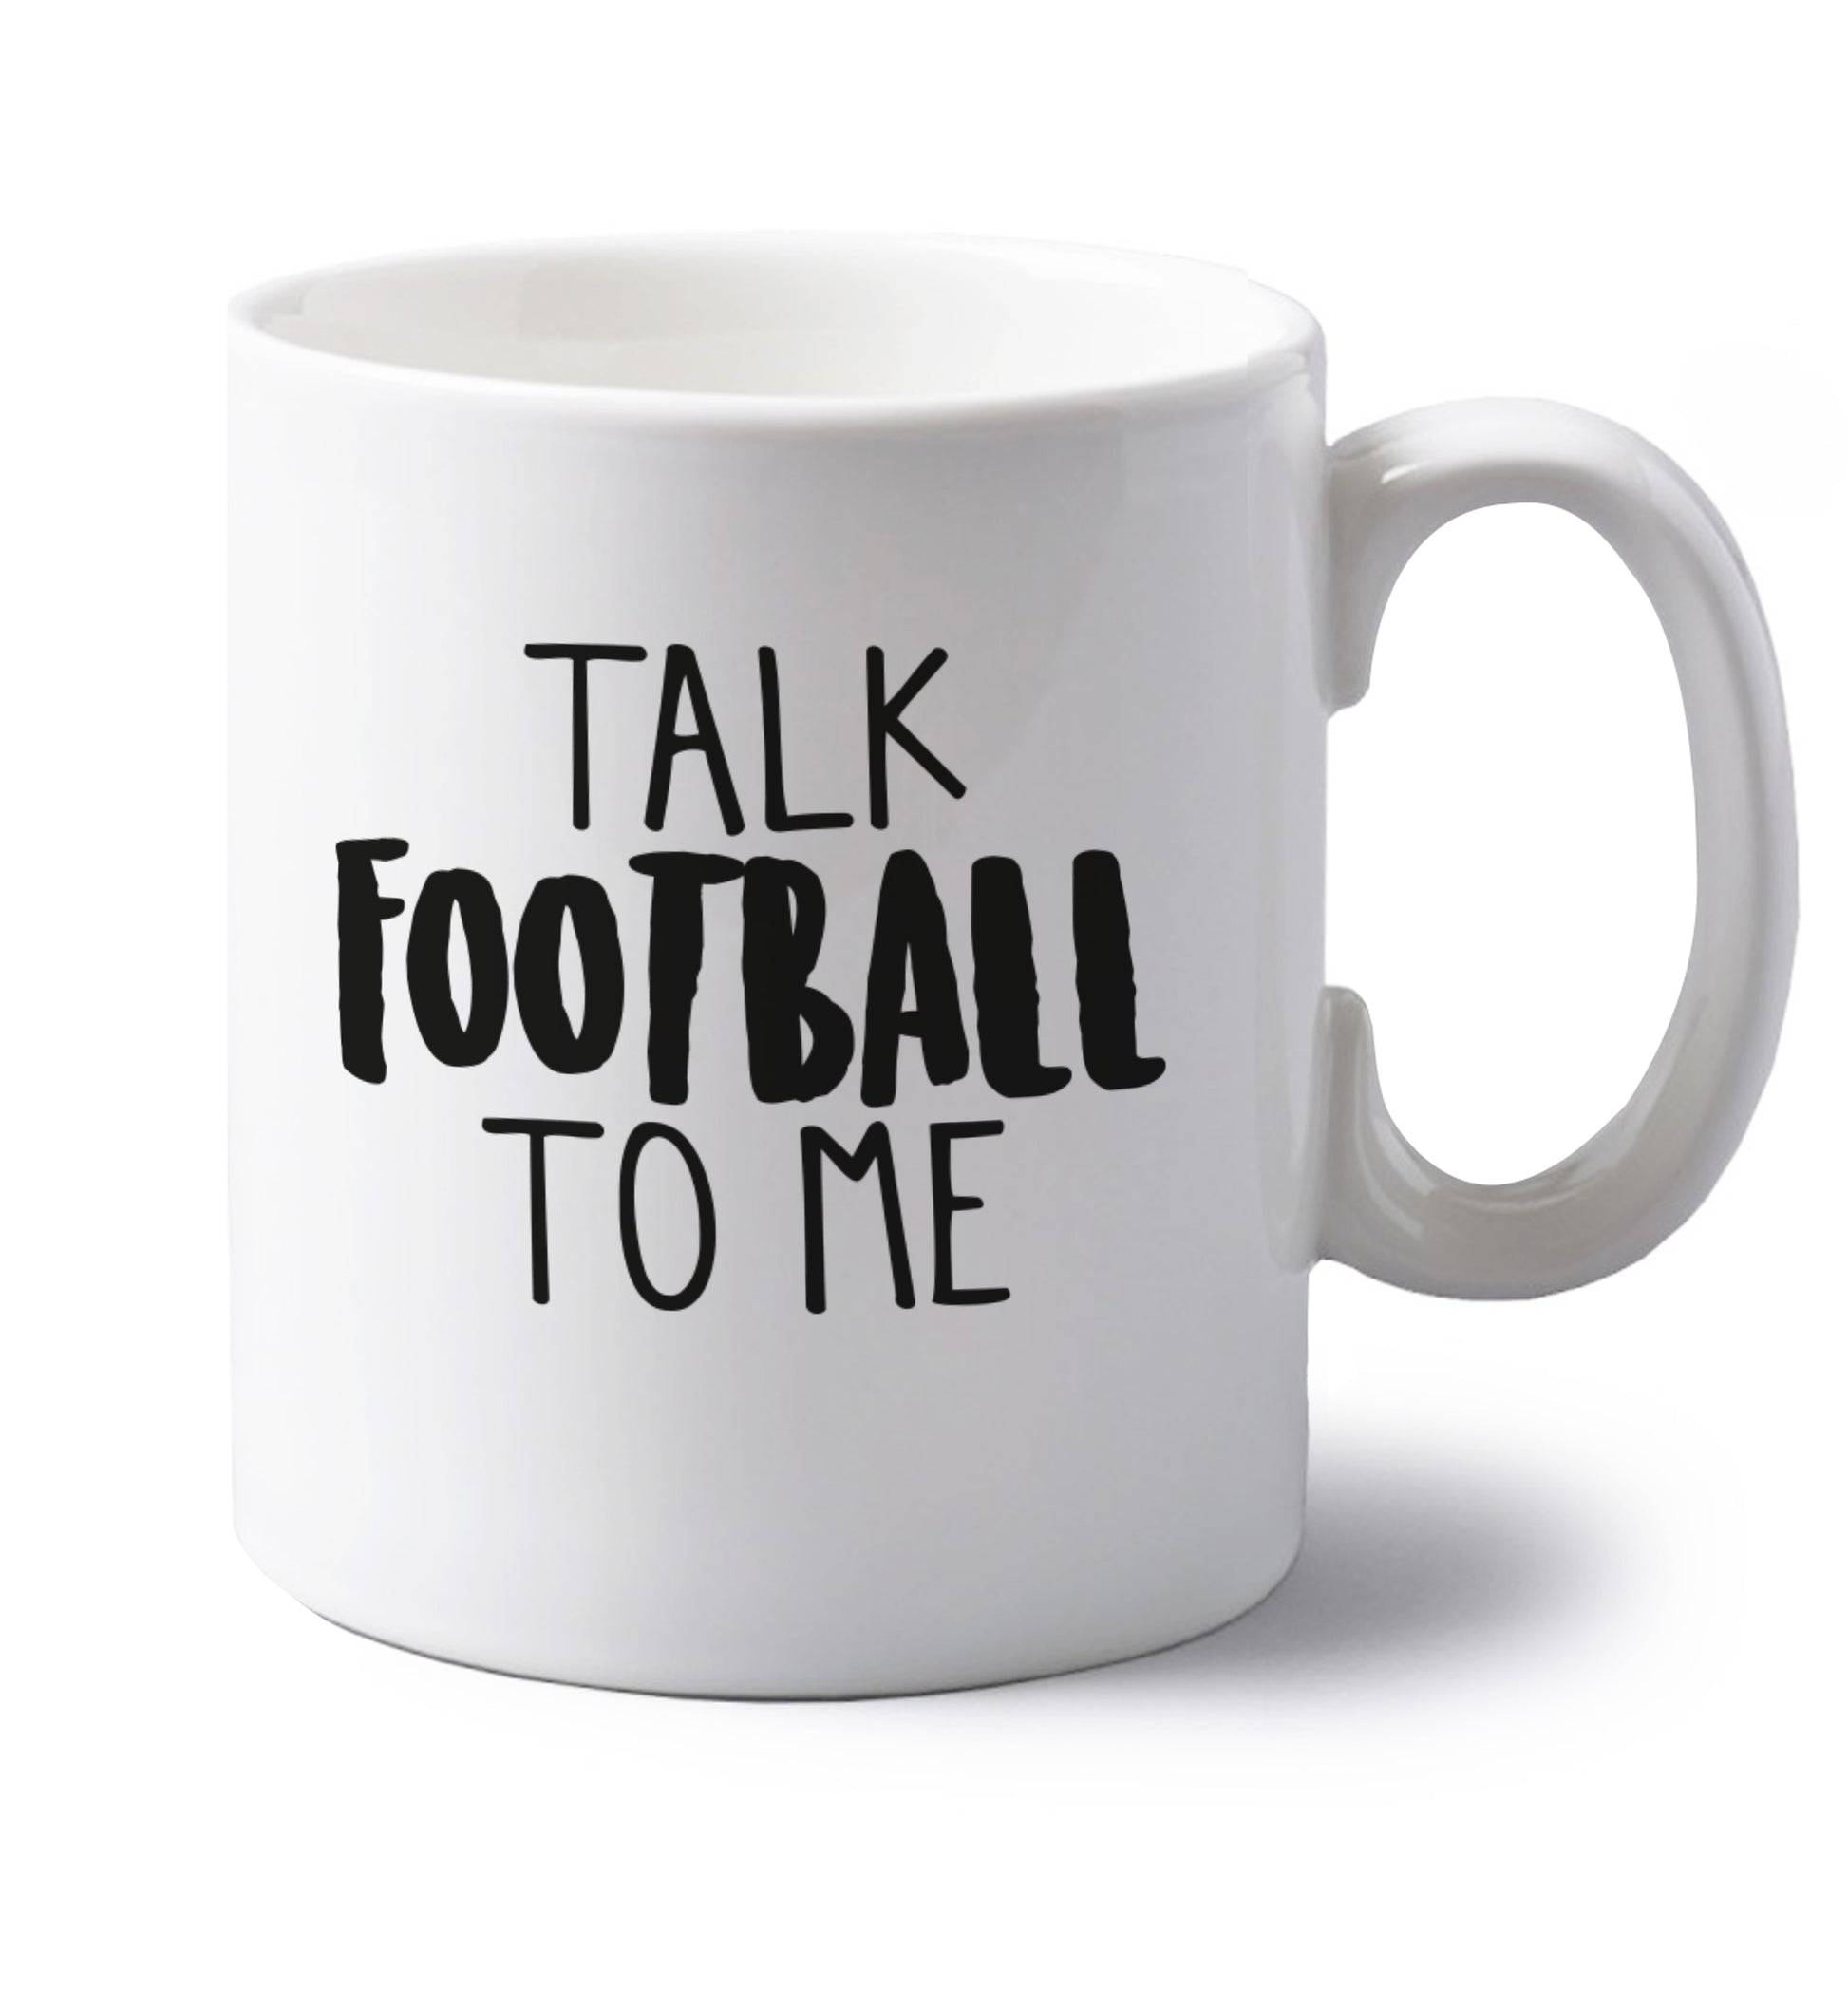 Talk football to me left handed white ceramic mug 